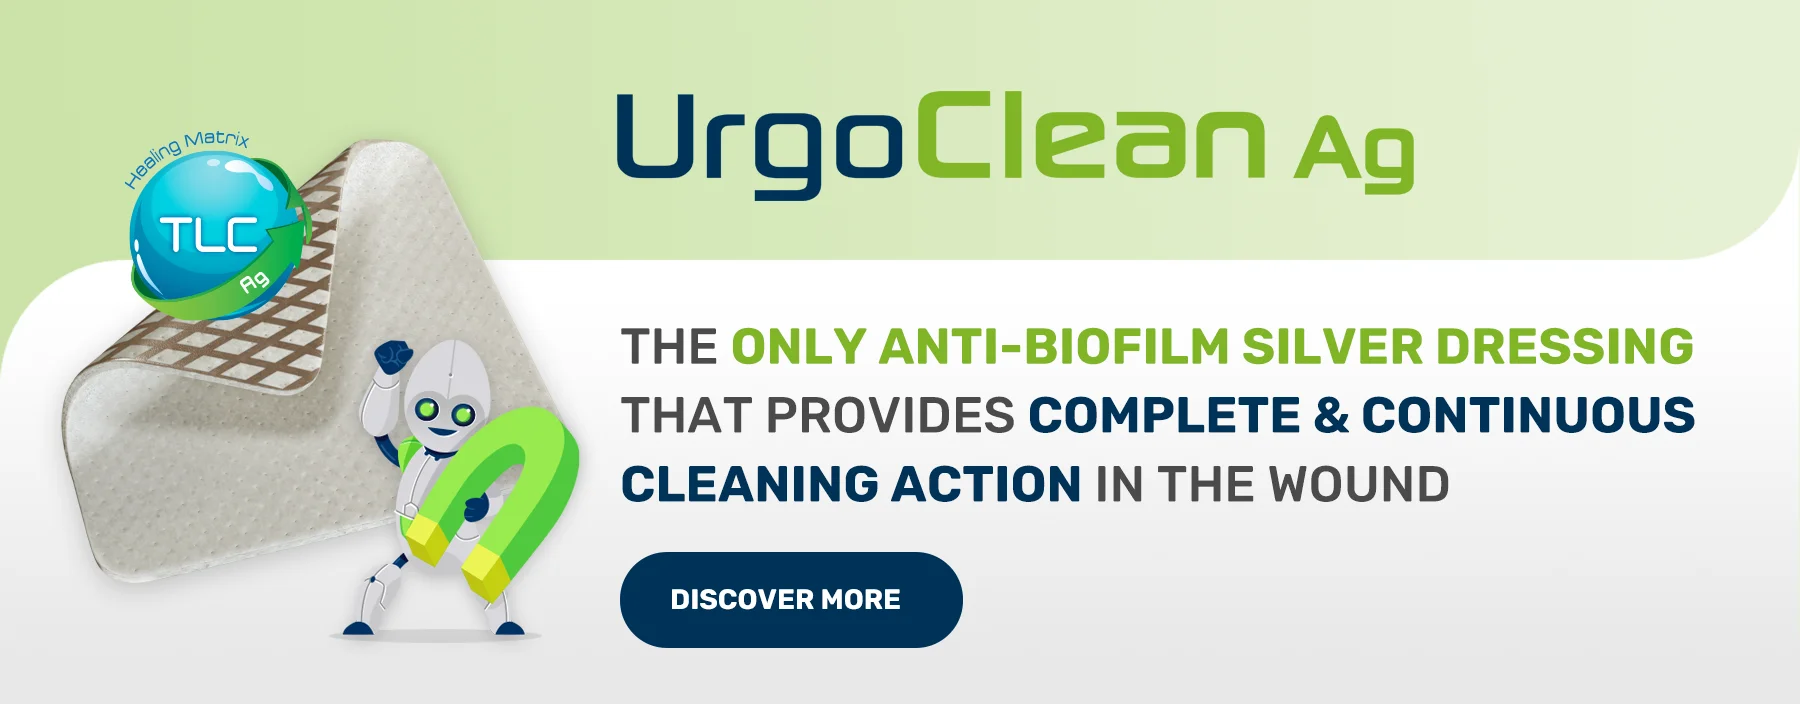 Urgo Clean Ag